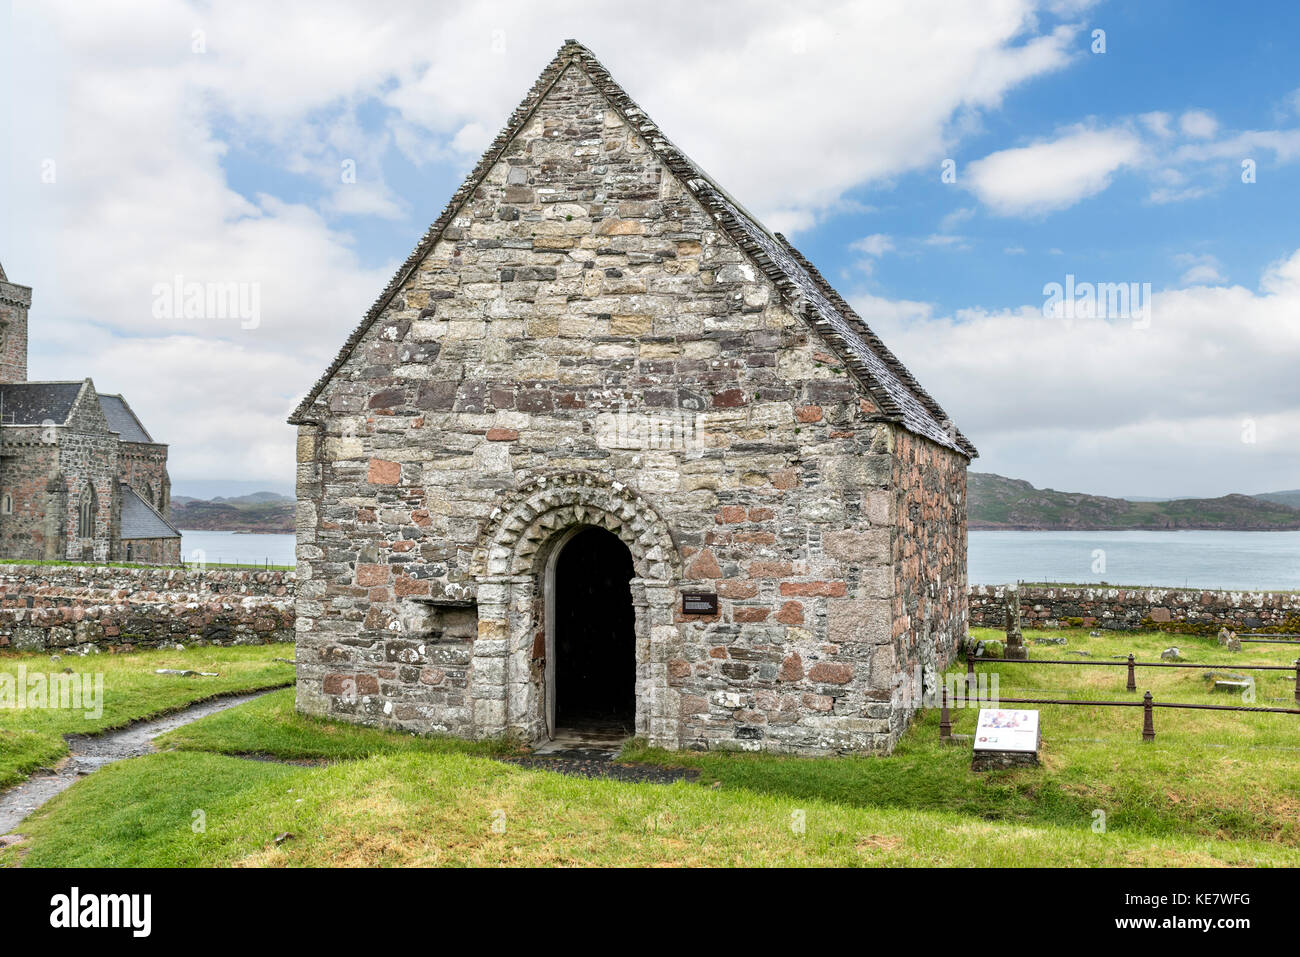 La Chapelle St Oran, datant du 1100s,, est la plus ancienne structure intacte sur l'île d'Iona, Argyll and Bute, Ecosse, Royaume-Uni Banque D'Images